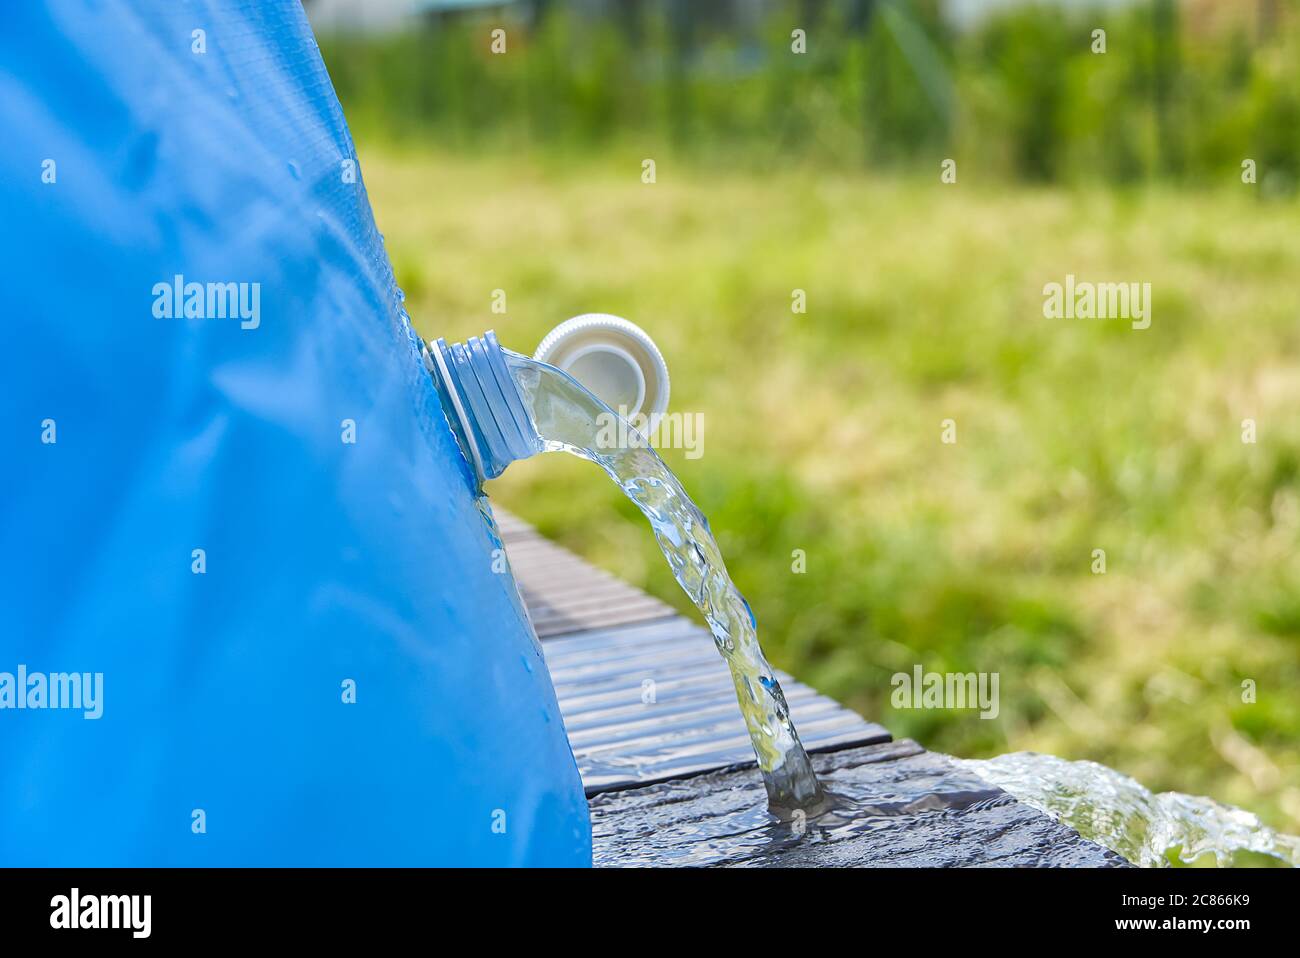 Abfluss von Wasser aus einem aufblasbaren Pool. Wasserfluss aus dem Rohr. Wasserwechsel im Sommerpool auf der Terrasse. Stockfoto